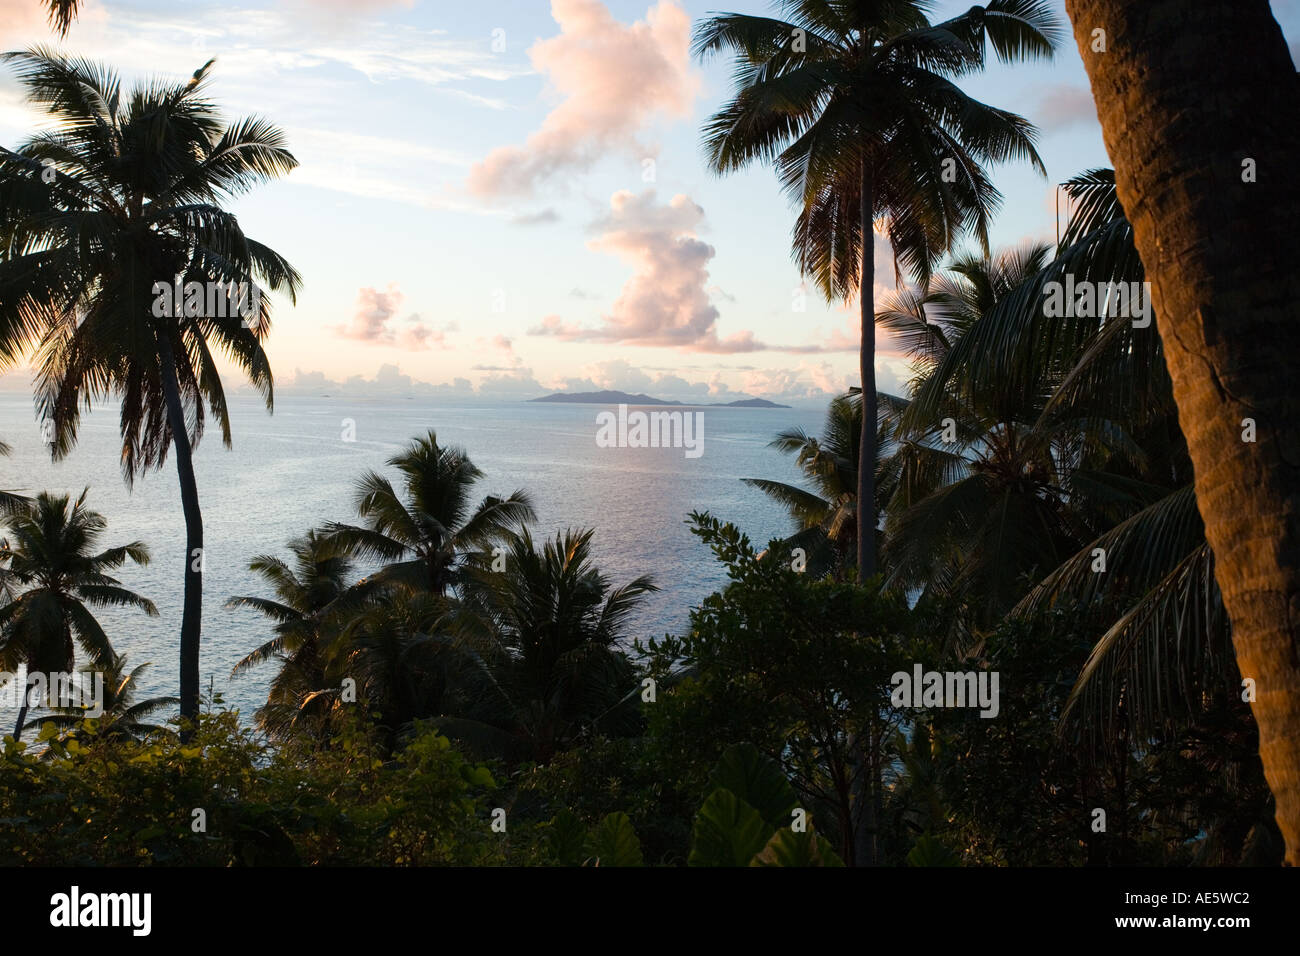 Ansicht des Strandes durch Kokospalmen Eigenschaft freigegeben Fregate Island-Seychellen Stockfoto